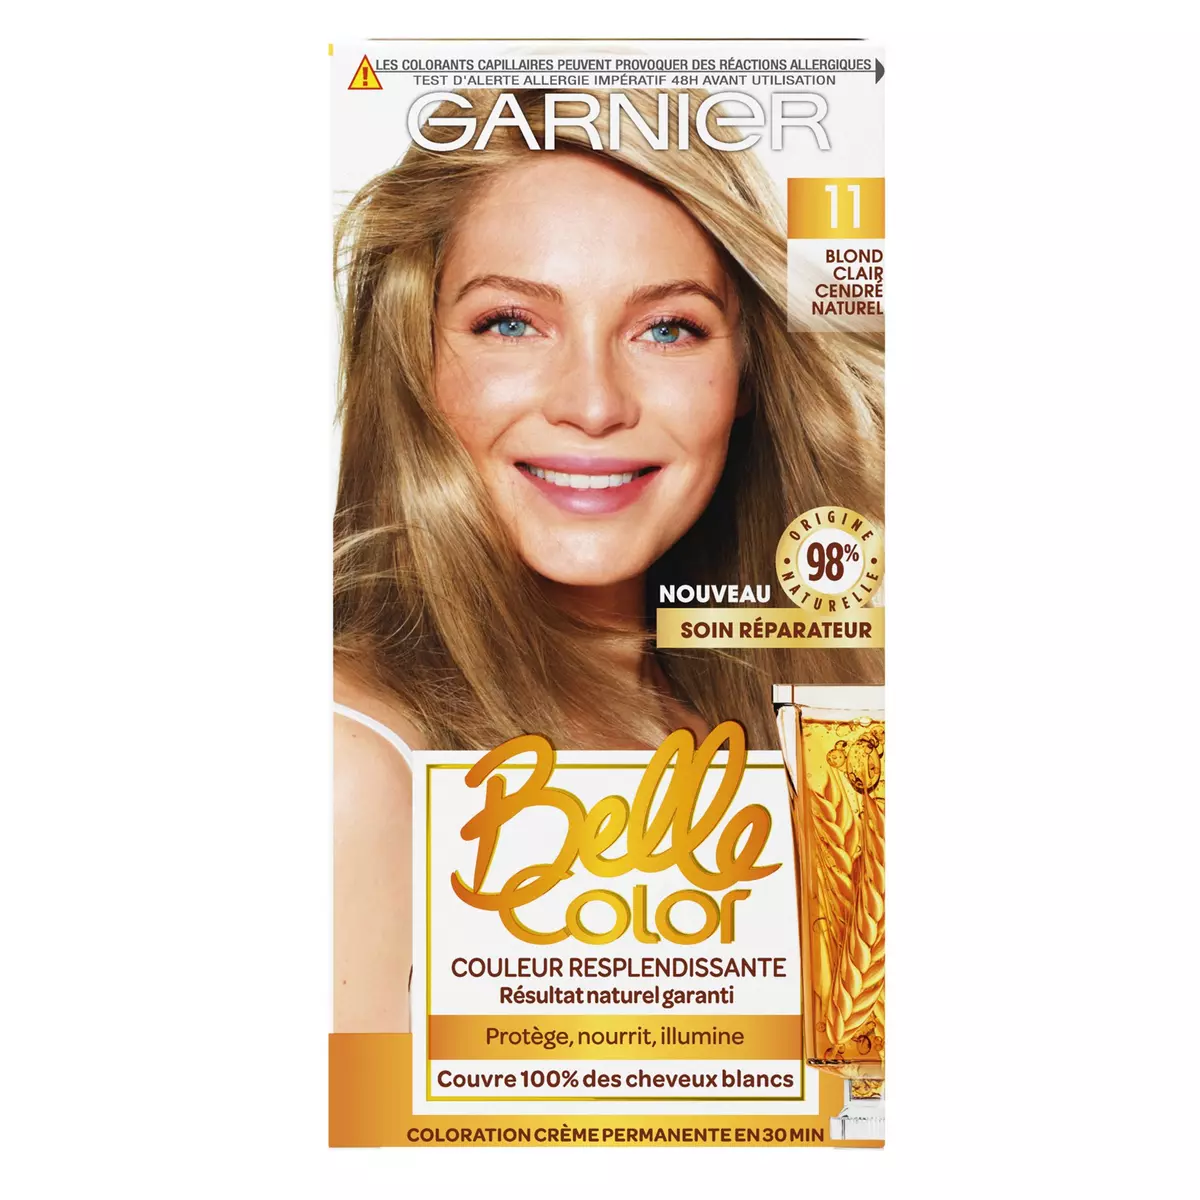 GARNIER Belle color coloration permanente 11 blond clair cendré 3 produits 1 kit